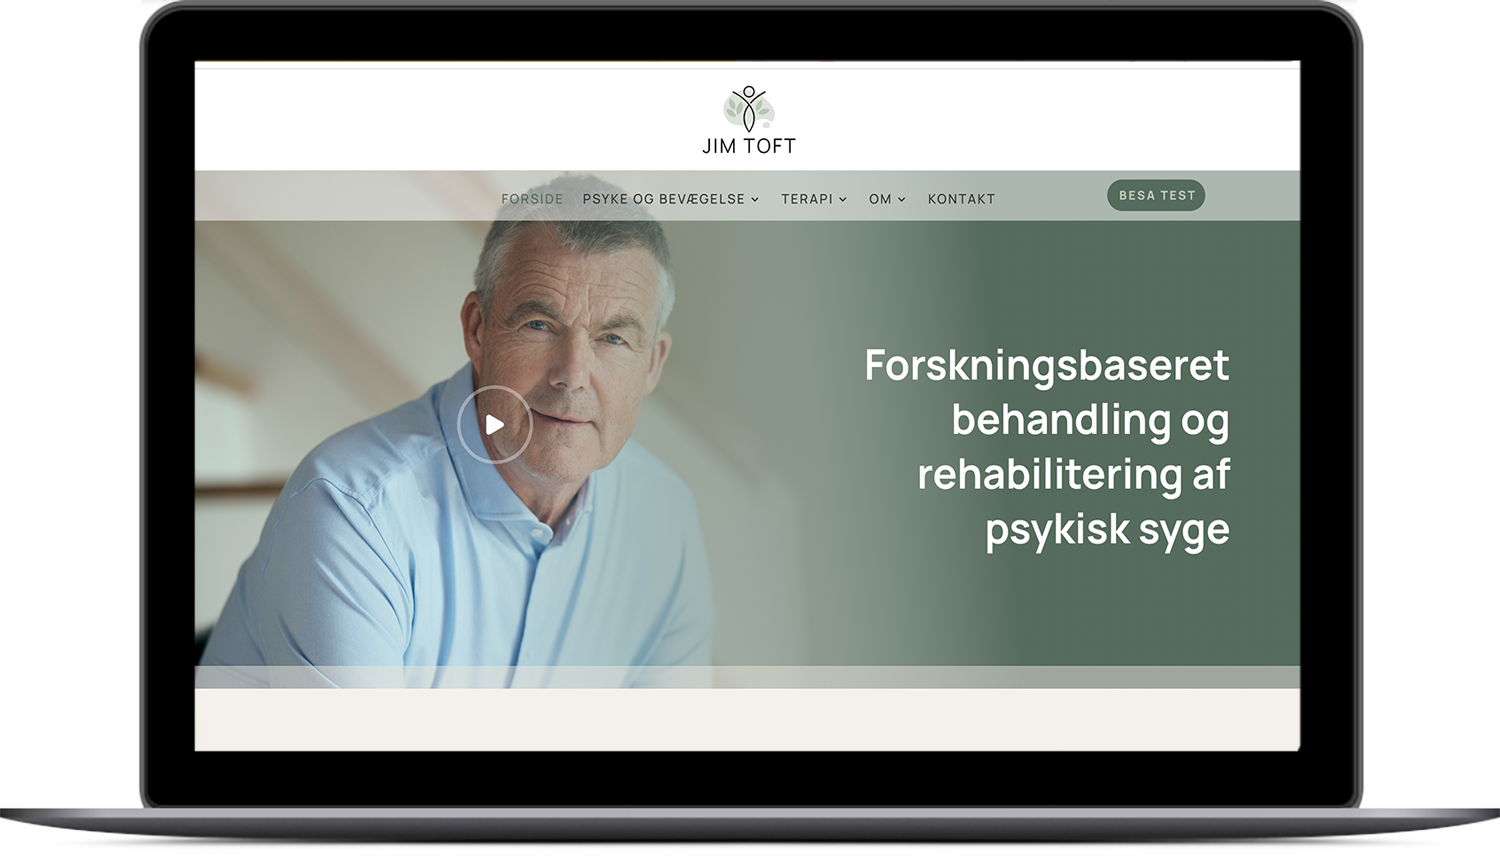 Carsten Øvlisen hjemmeside